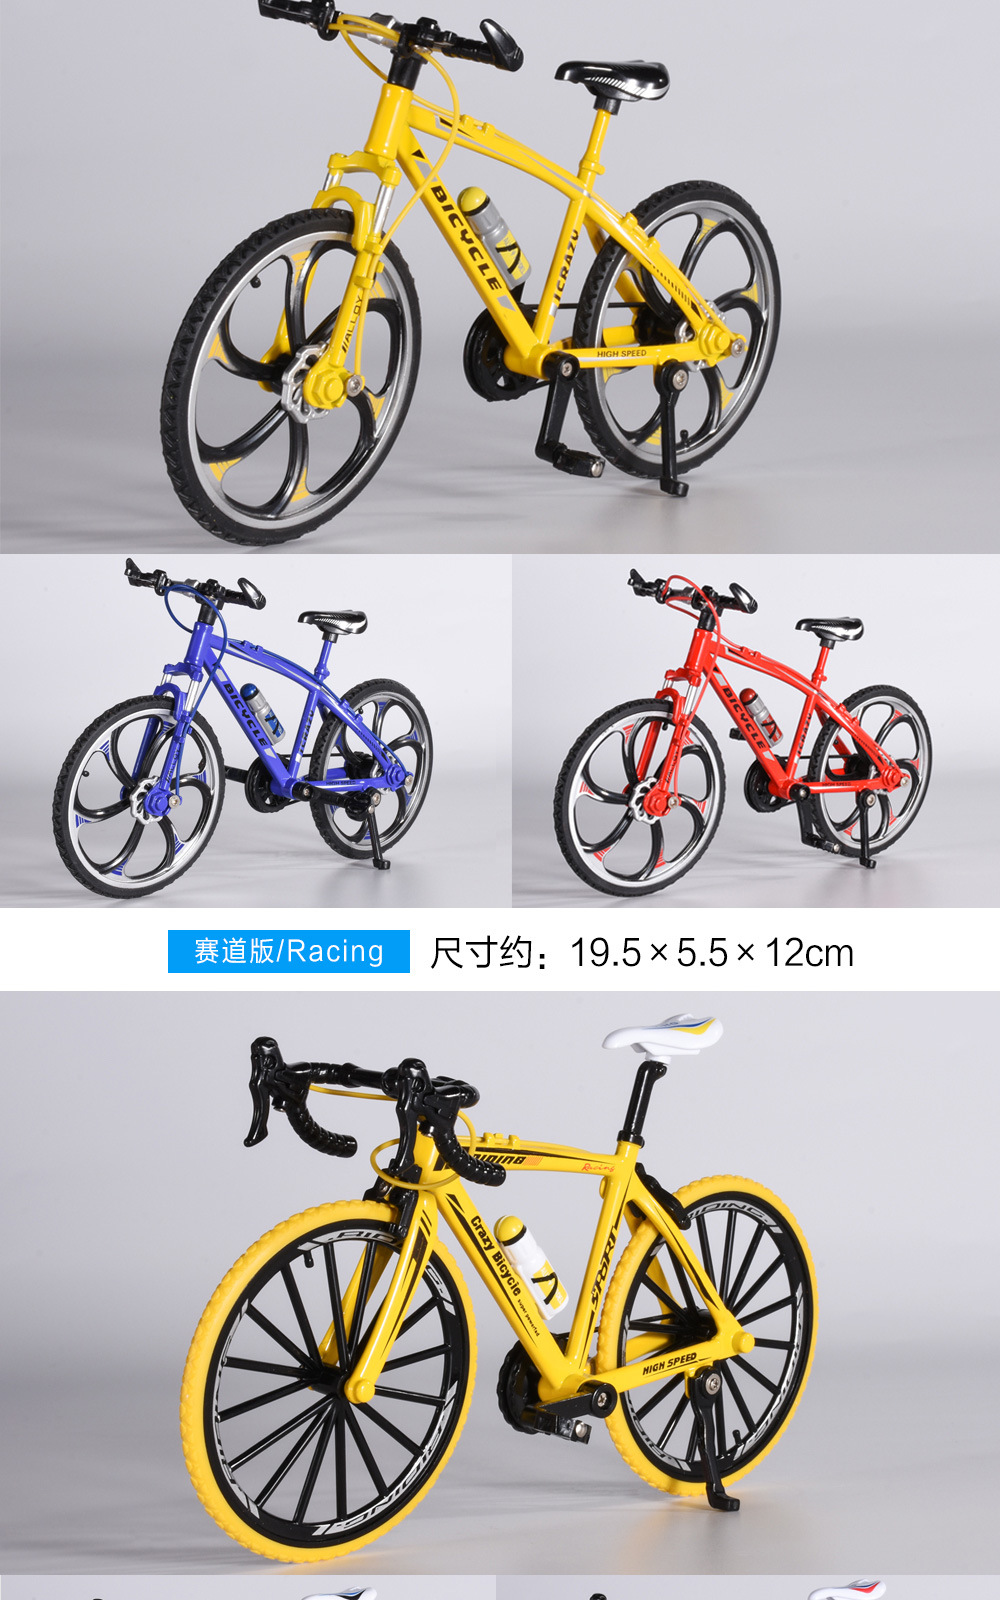 自行车详情页_07.jpg